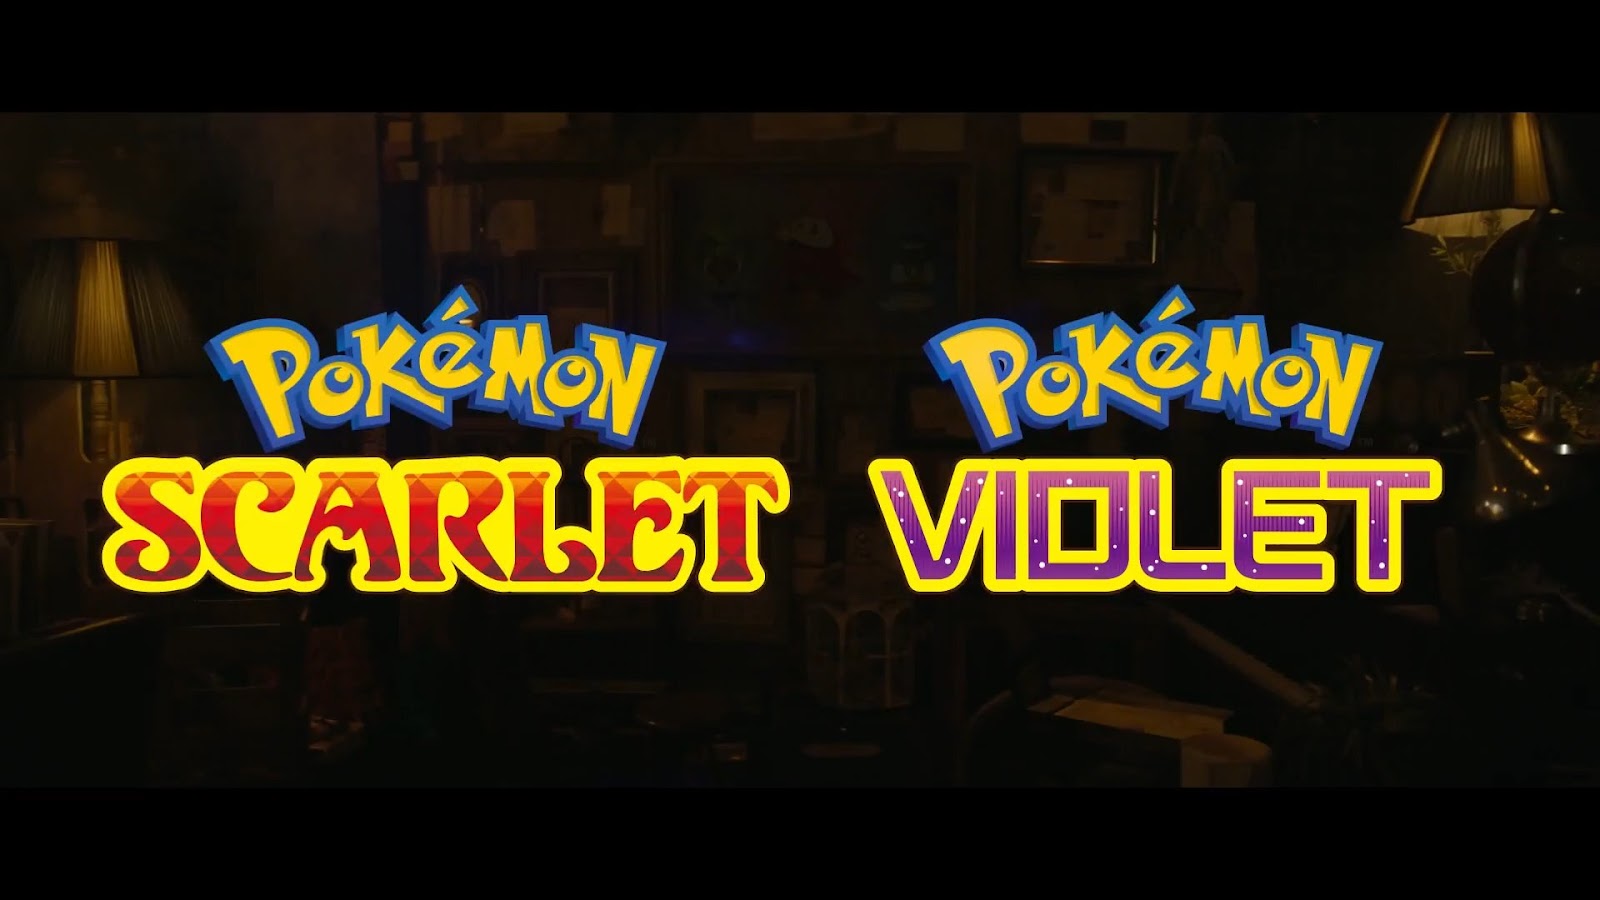 Pokémon Scarlet e Violet: quais são os Pokémon confirmados? - Canaltech